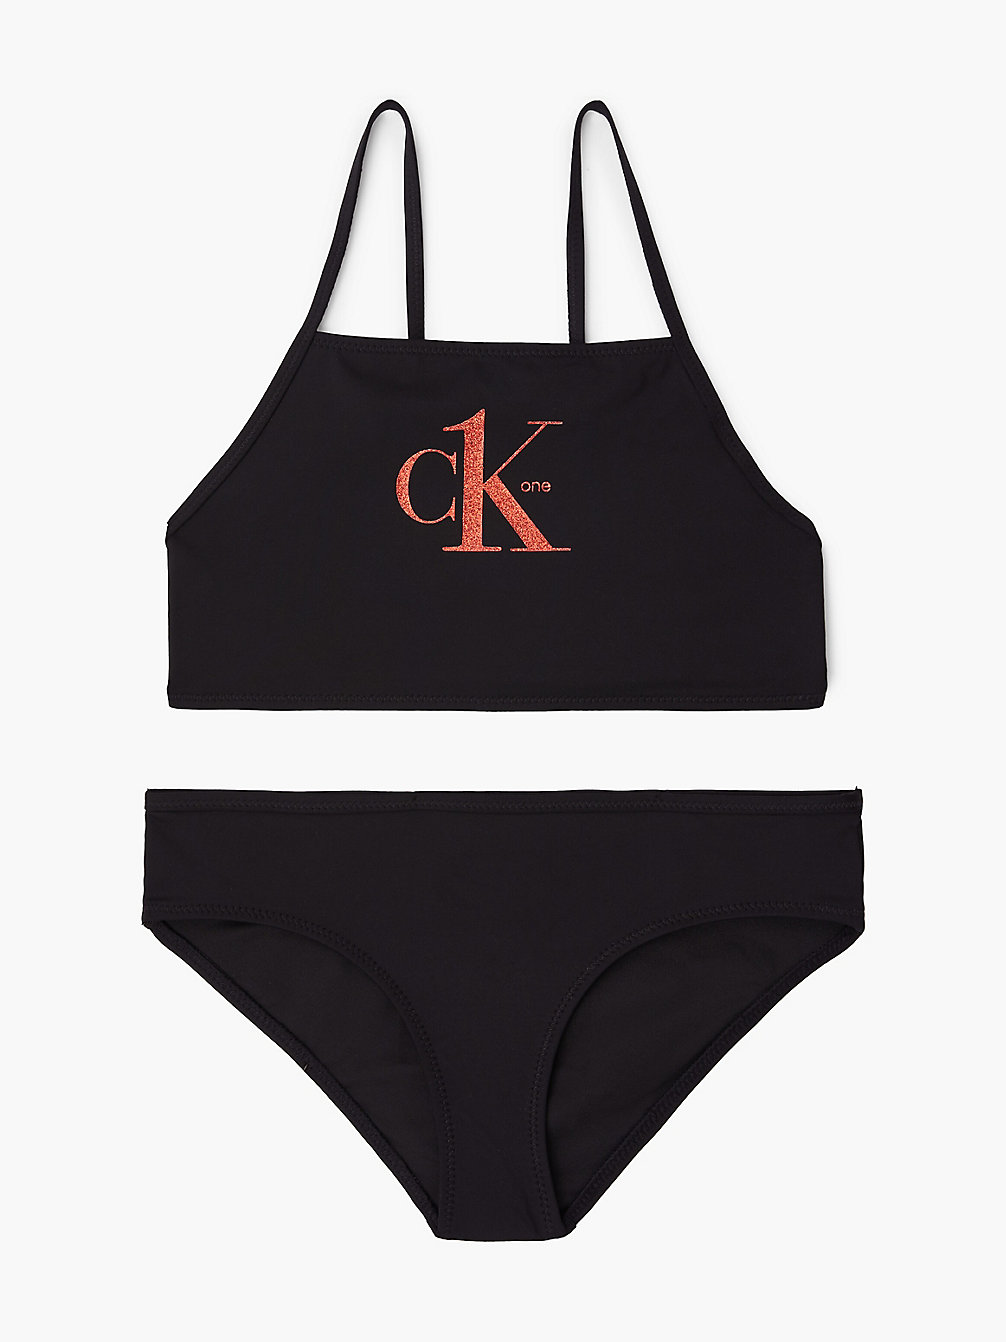 PVH BLACK Bikini-Set Mit Bralette Für Mädchen - Y2ck One undefined Maedchen Calvin Klein